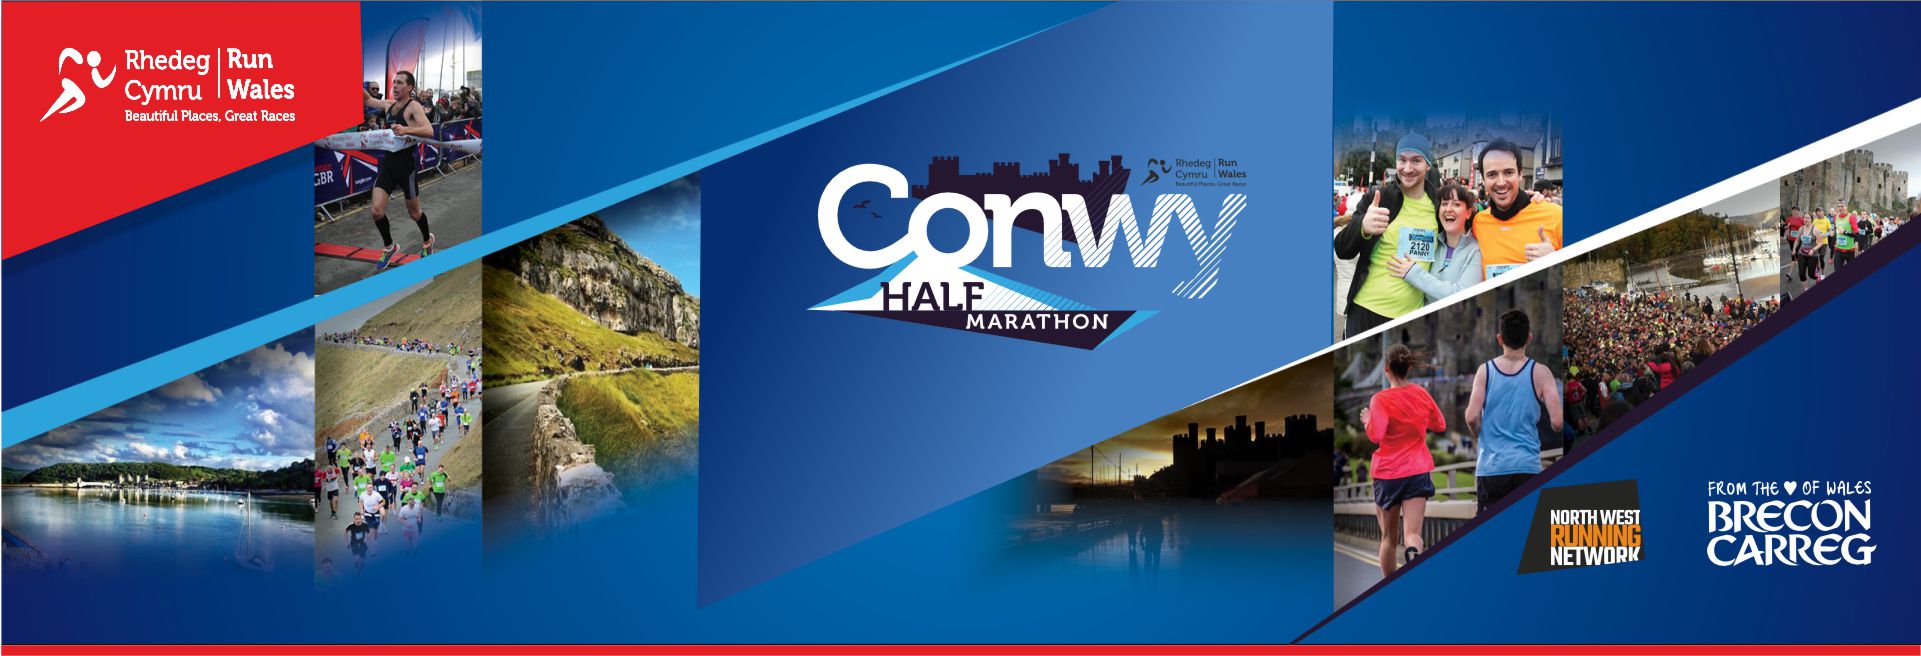 Conwy Half Marathon